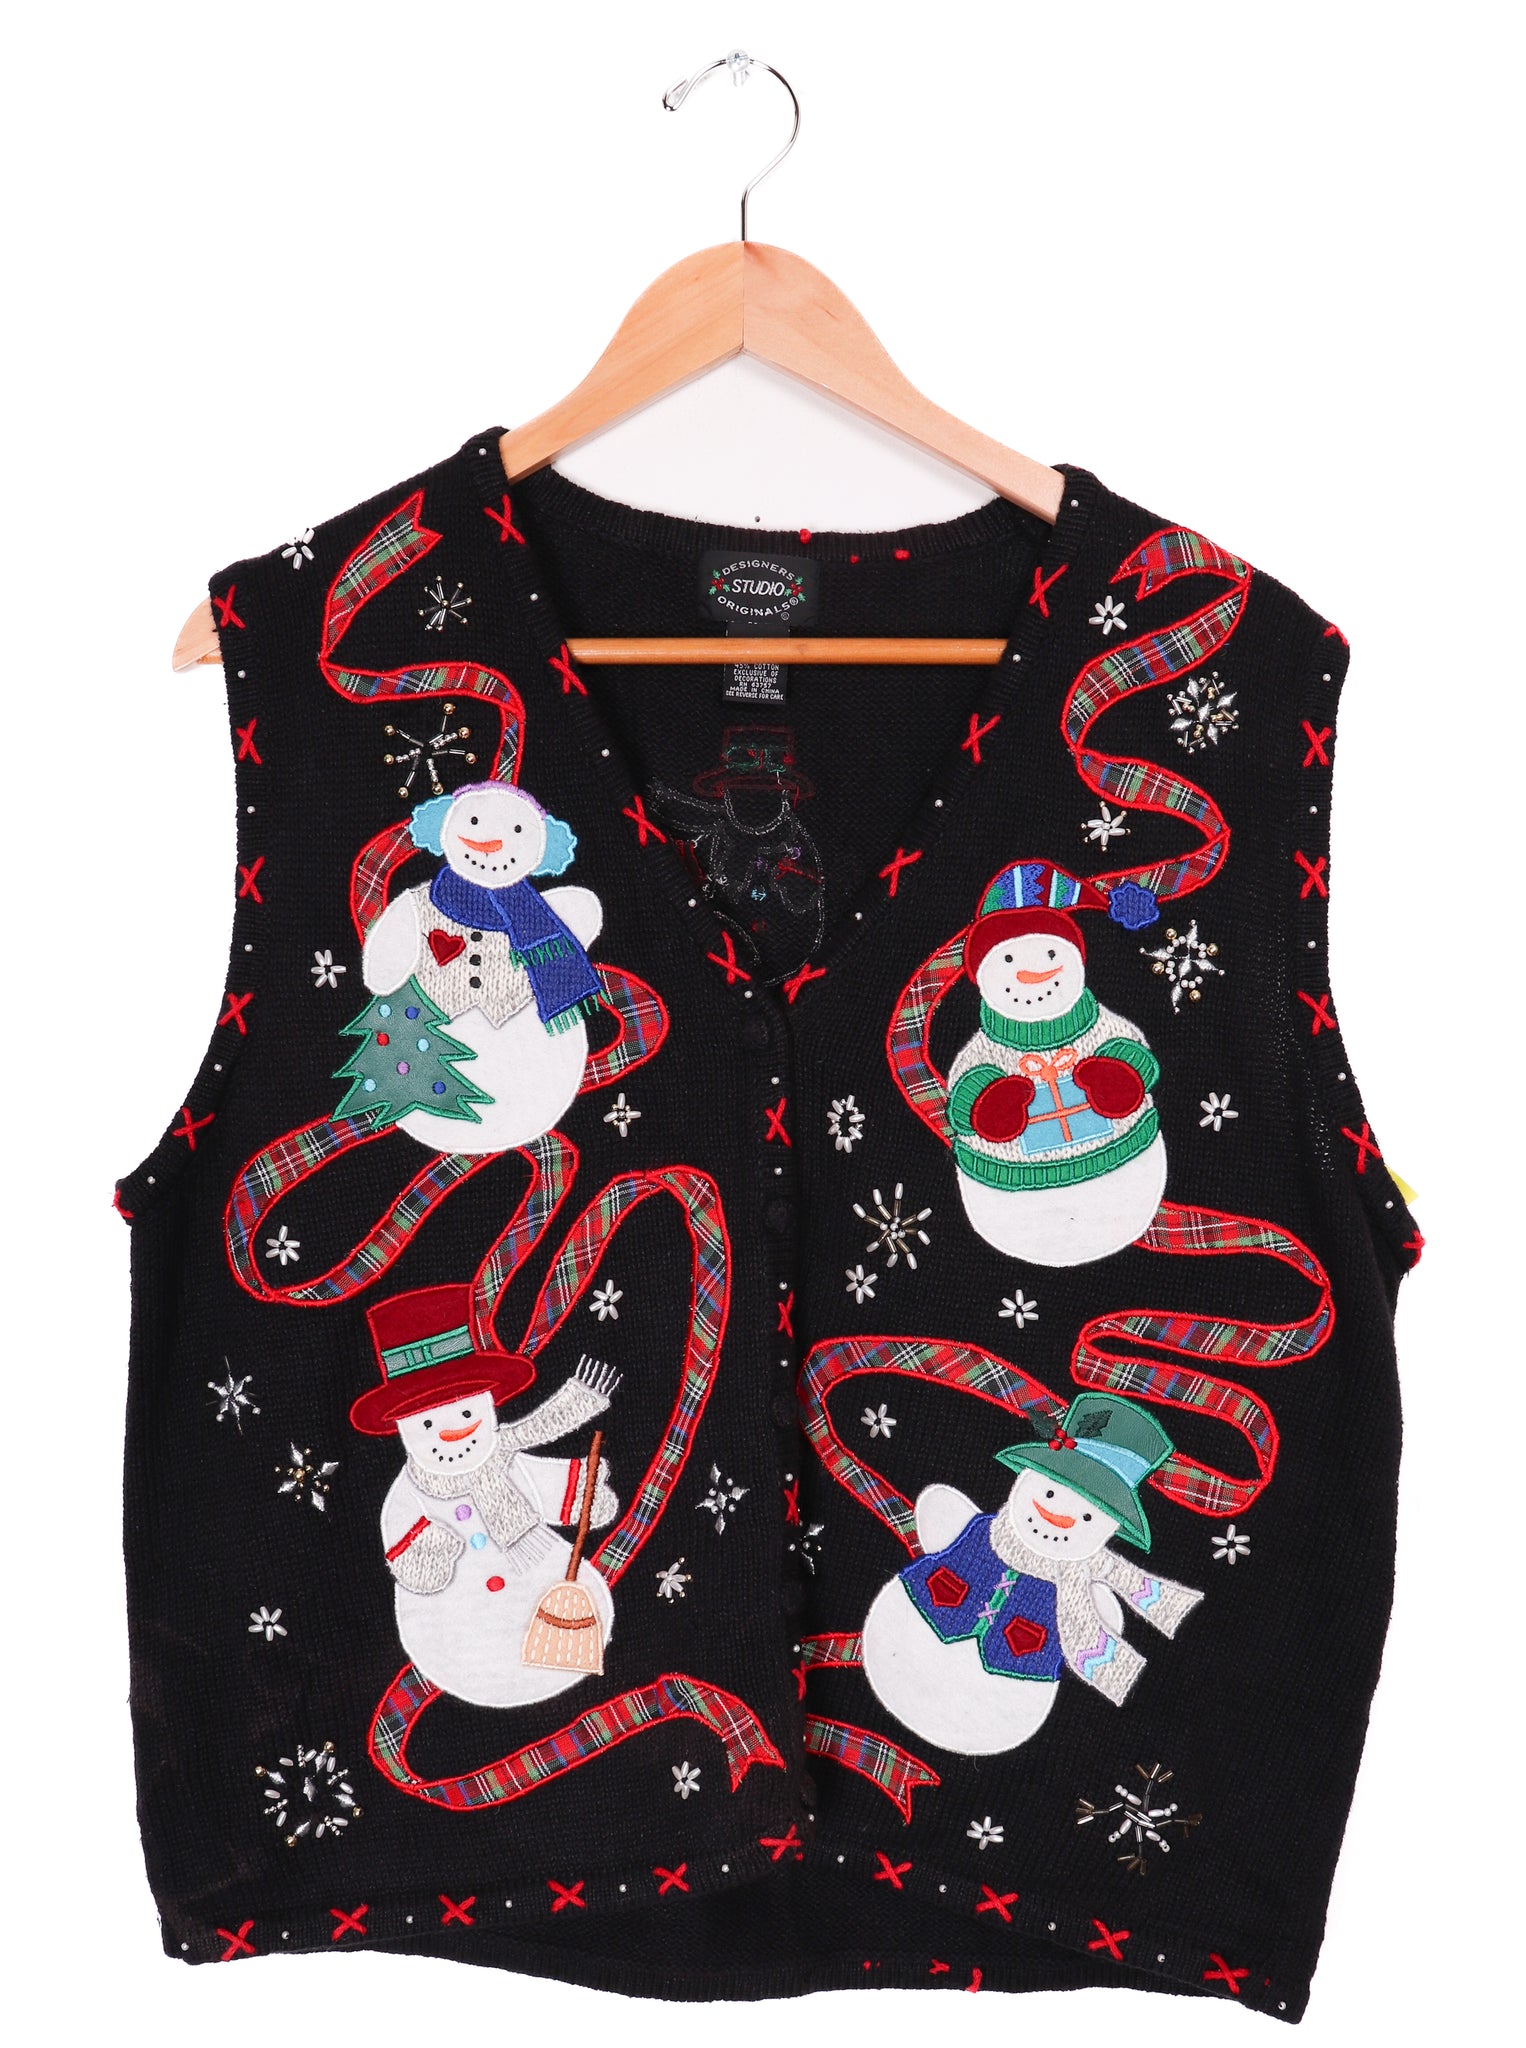 Designers Studio Originals Fun Snowmen Black Sweater Vest